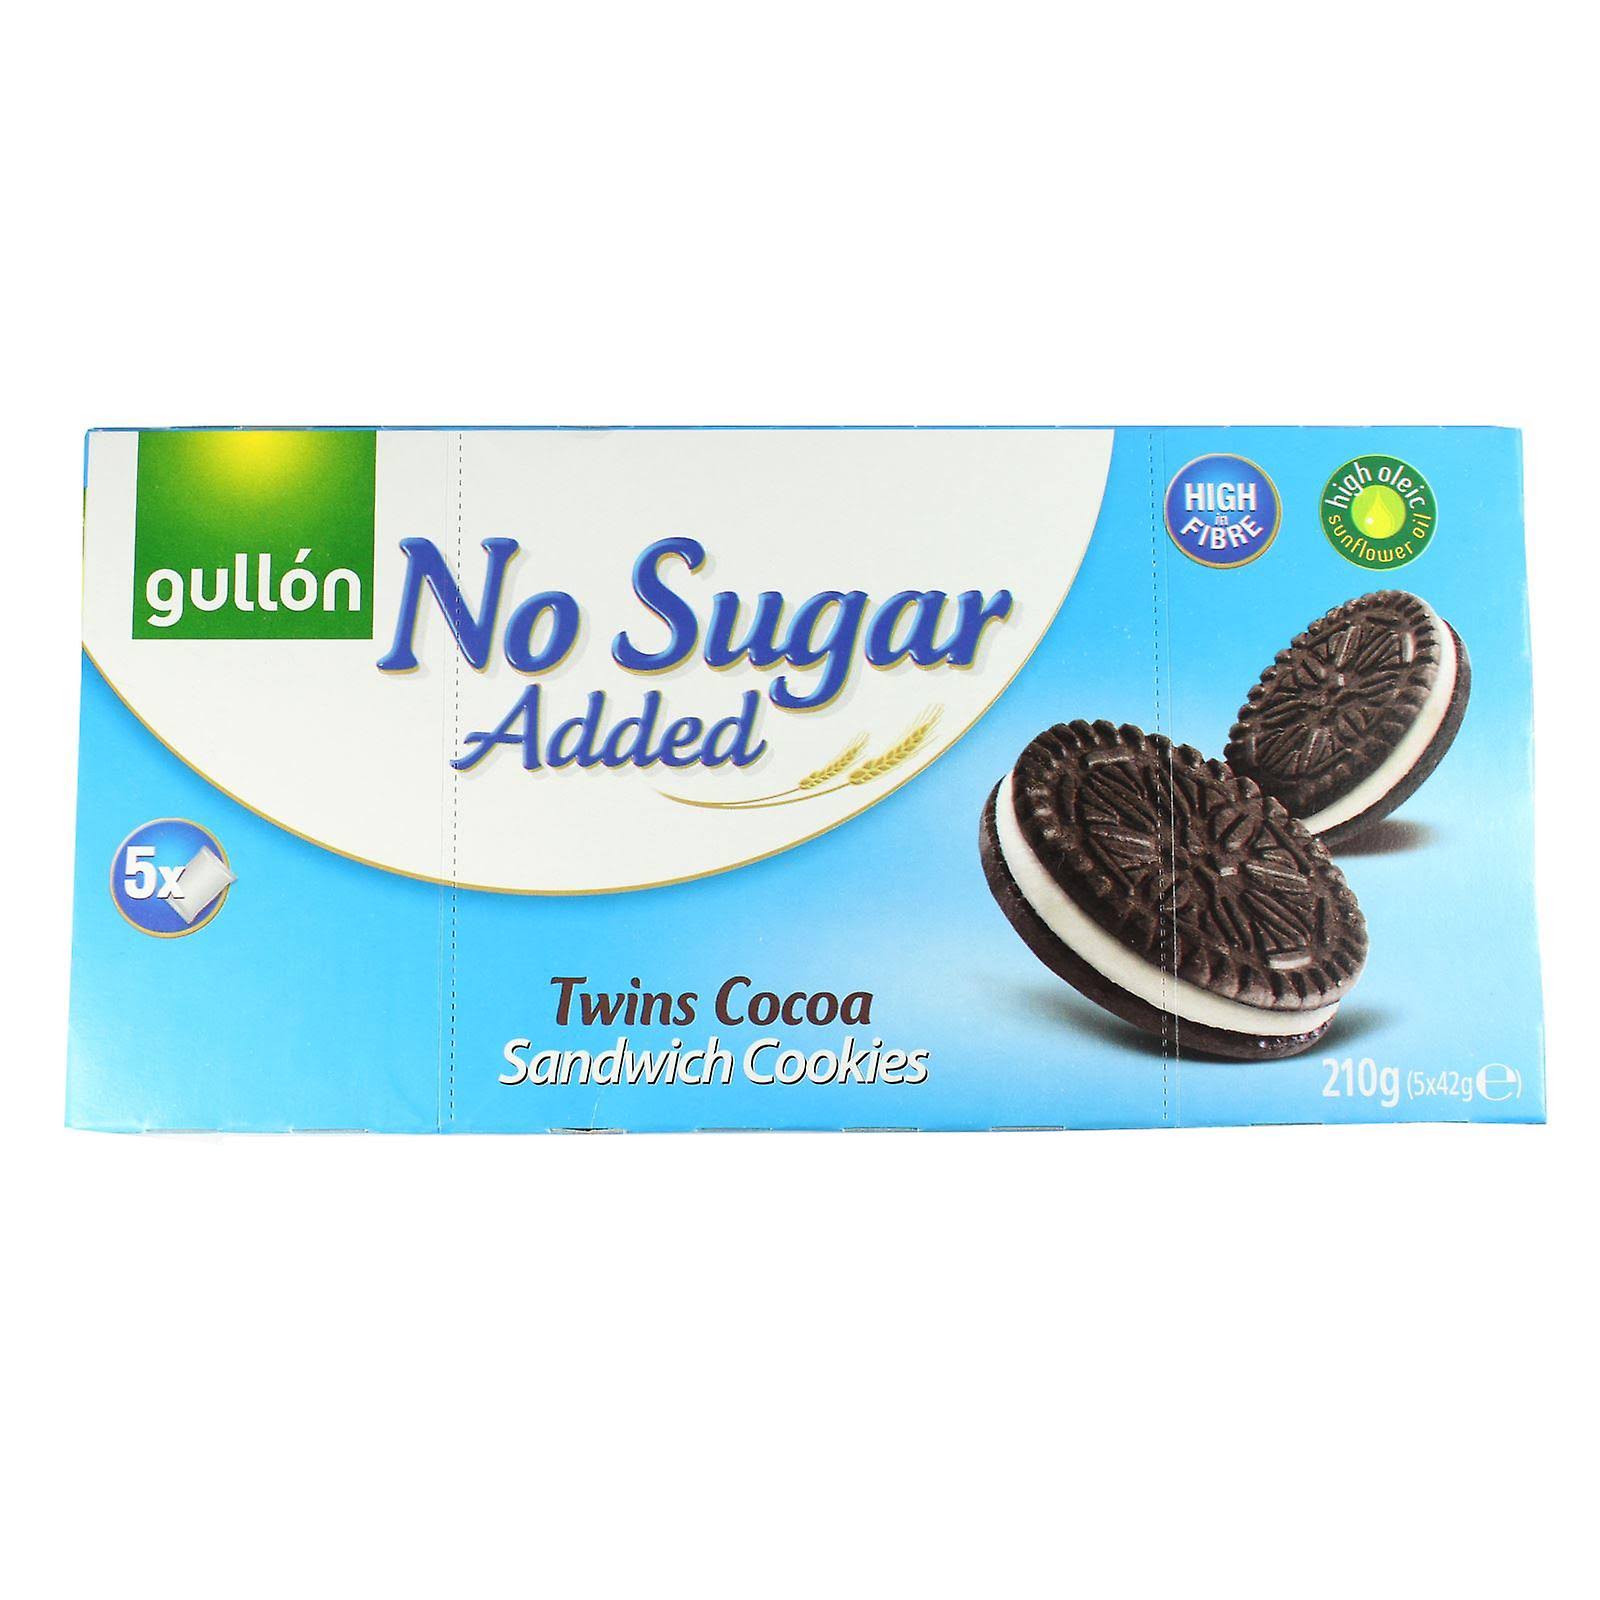 Gullón Twins Cocoa Sandwich Cookies - No Sugar Added, 5ct, 42g